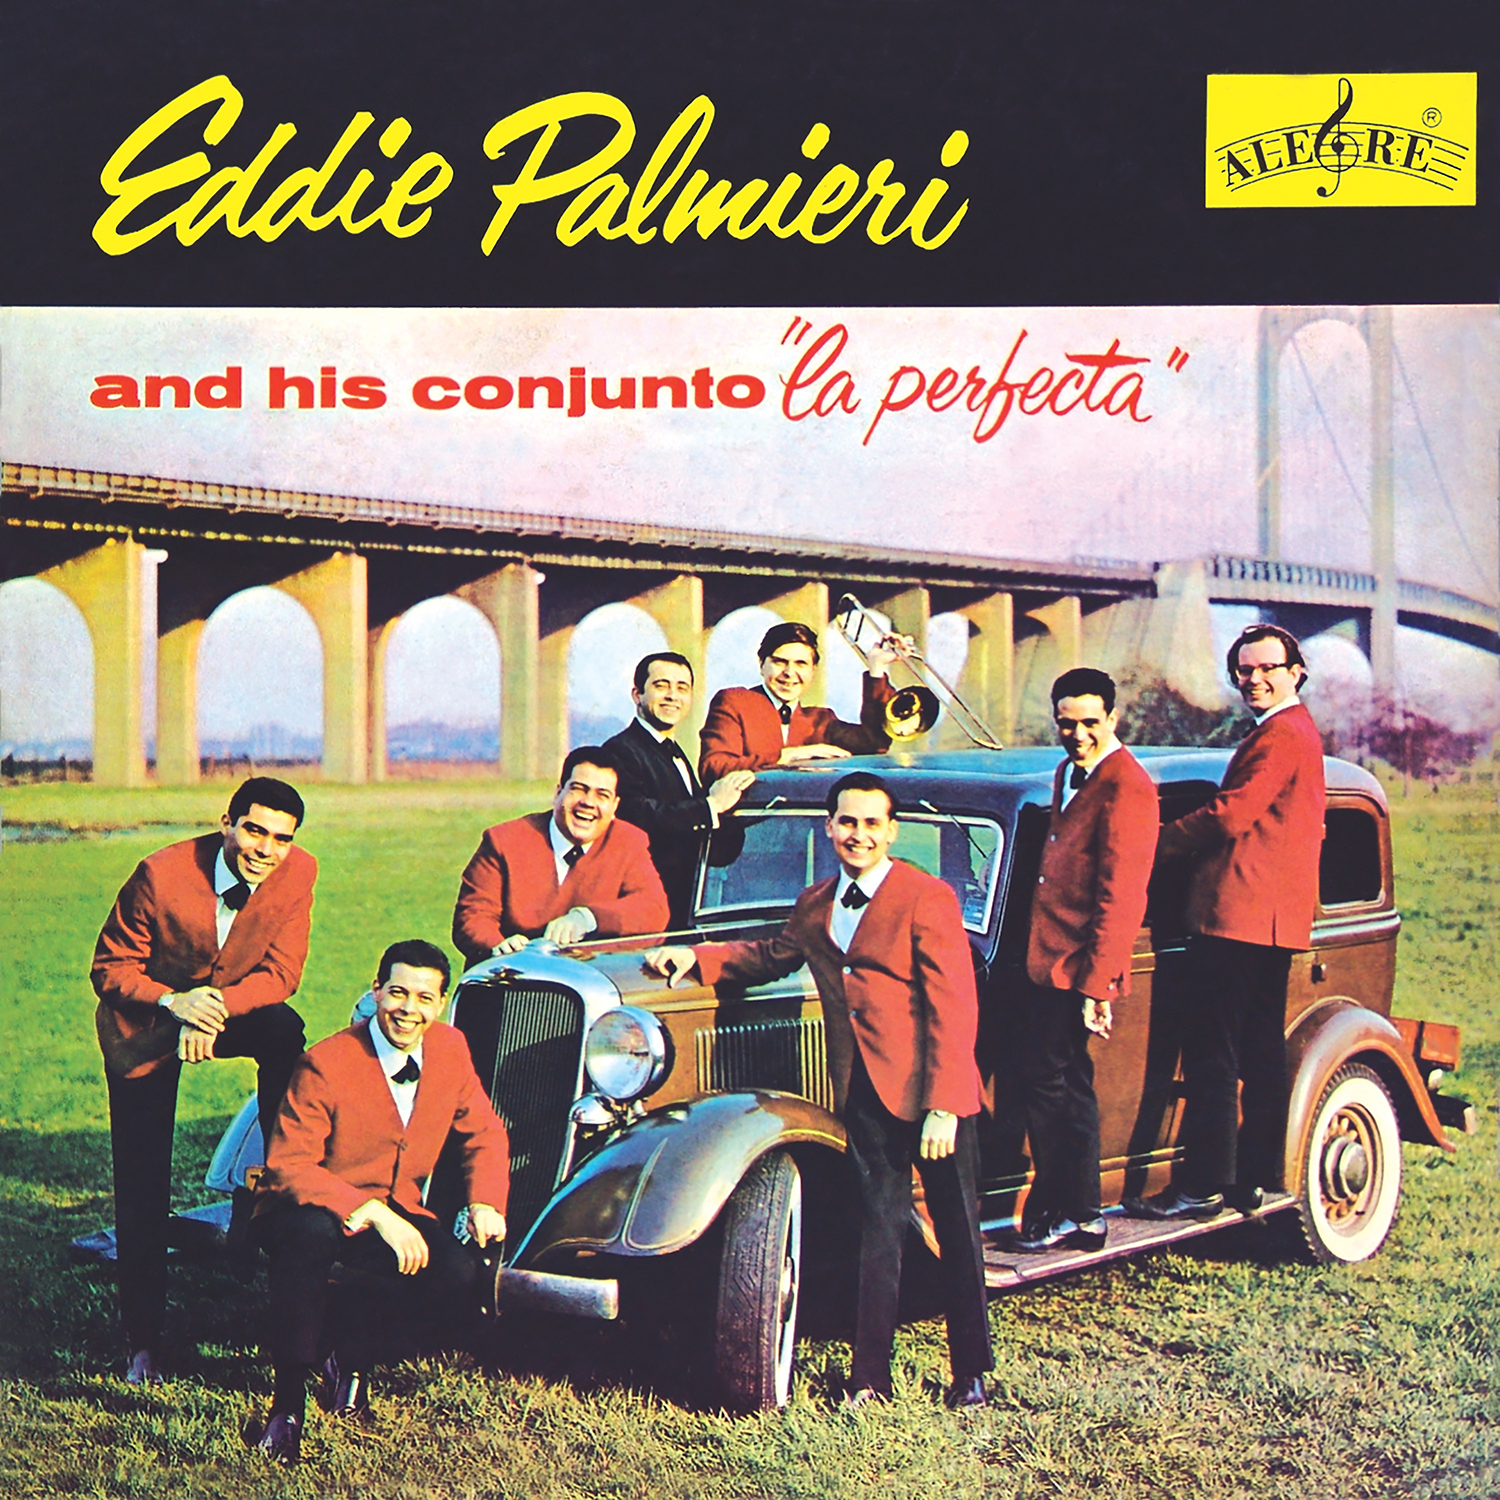 Eddie Palmieri - La Perfecta